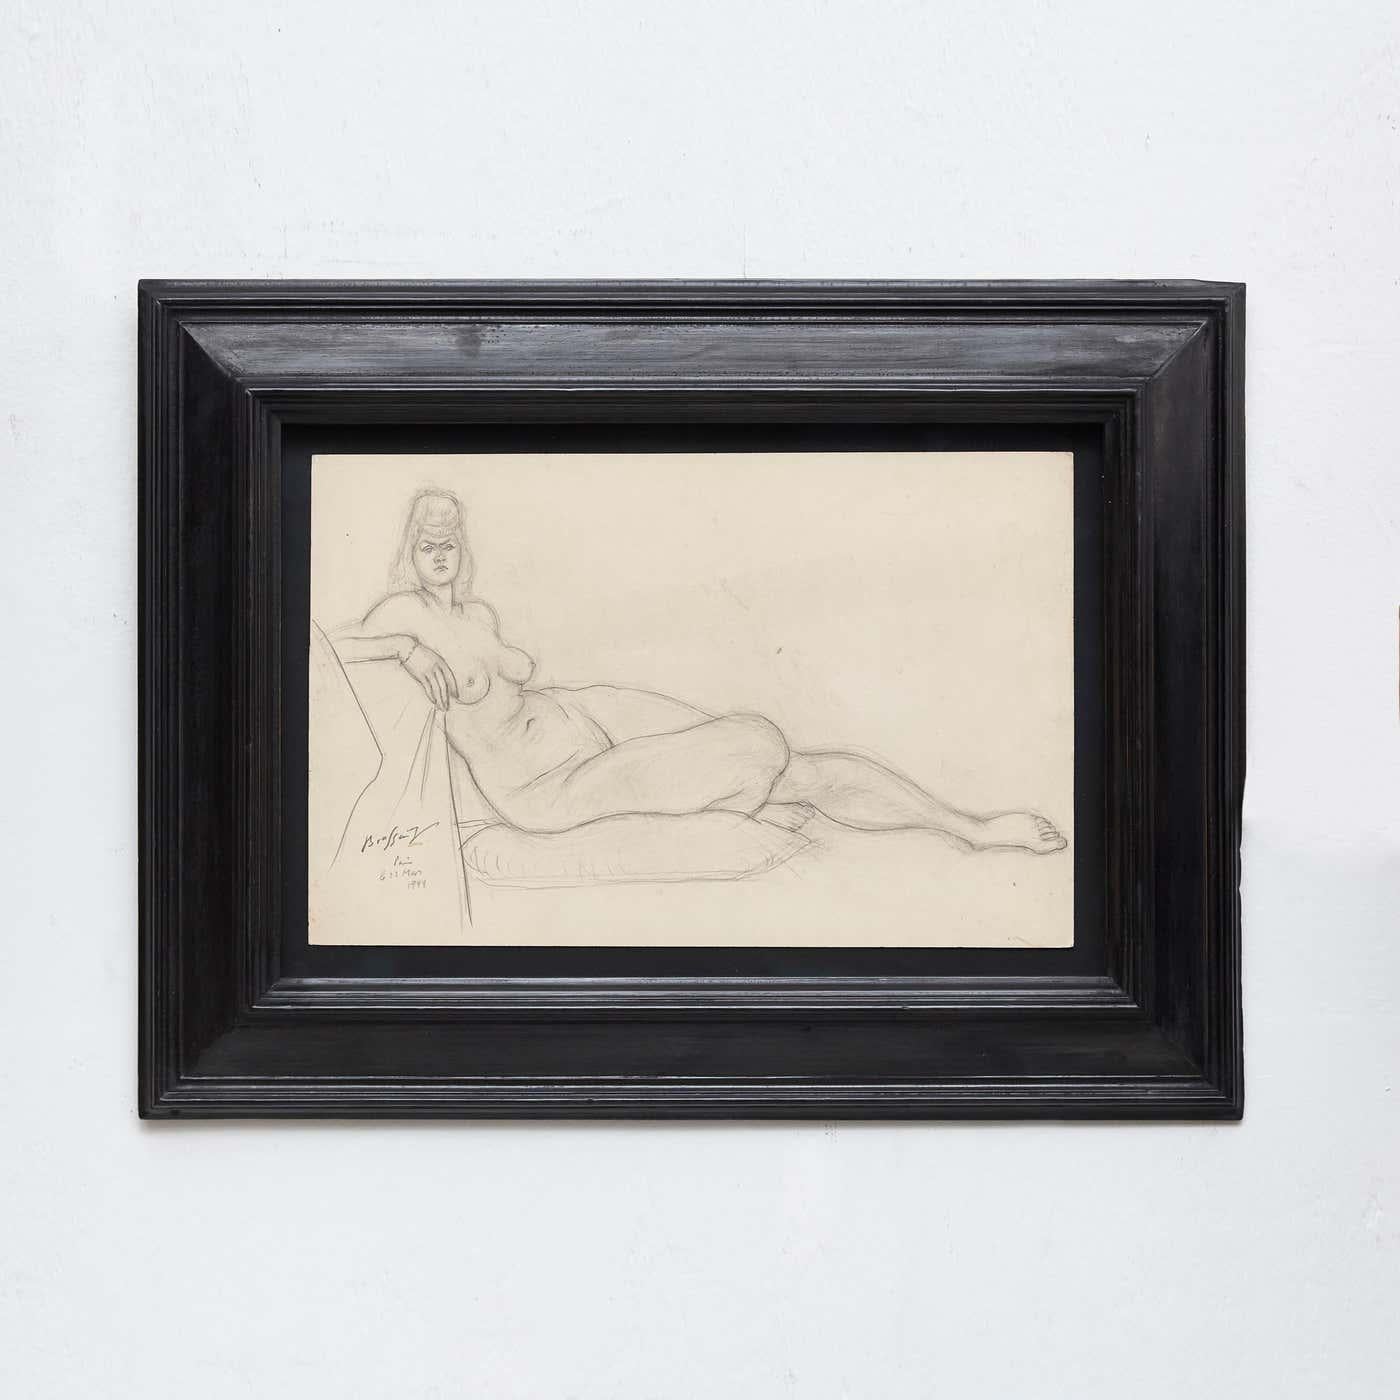 Tauchen Sie ein in die zeitlose Anziehungskraft von Brassaïs meisterhafter Kunst mit dieser außergewöhnlich seltenen Aktzeichnung, die 1944 in Paris angefertigt wurde. Diese signierte Zeichnung von Gyula Halász ist eine fesselnde Darstellung der